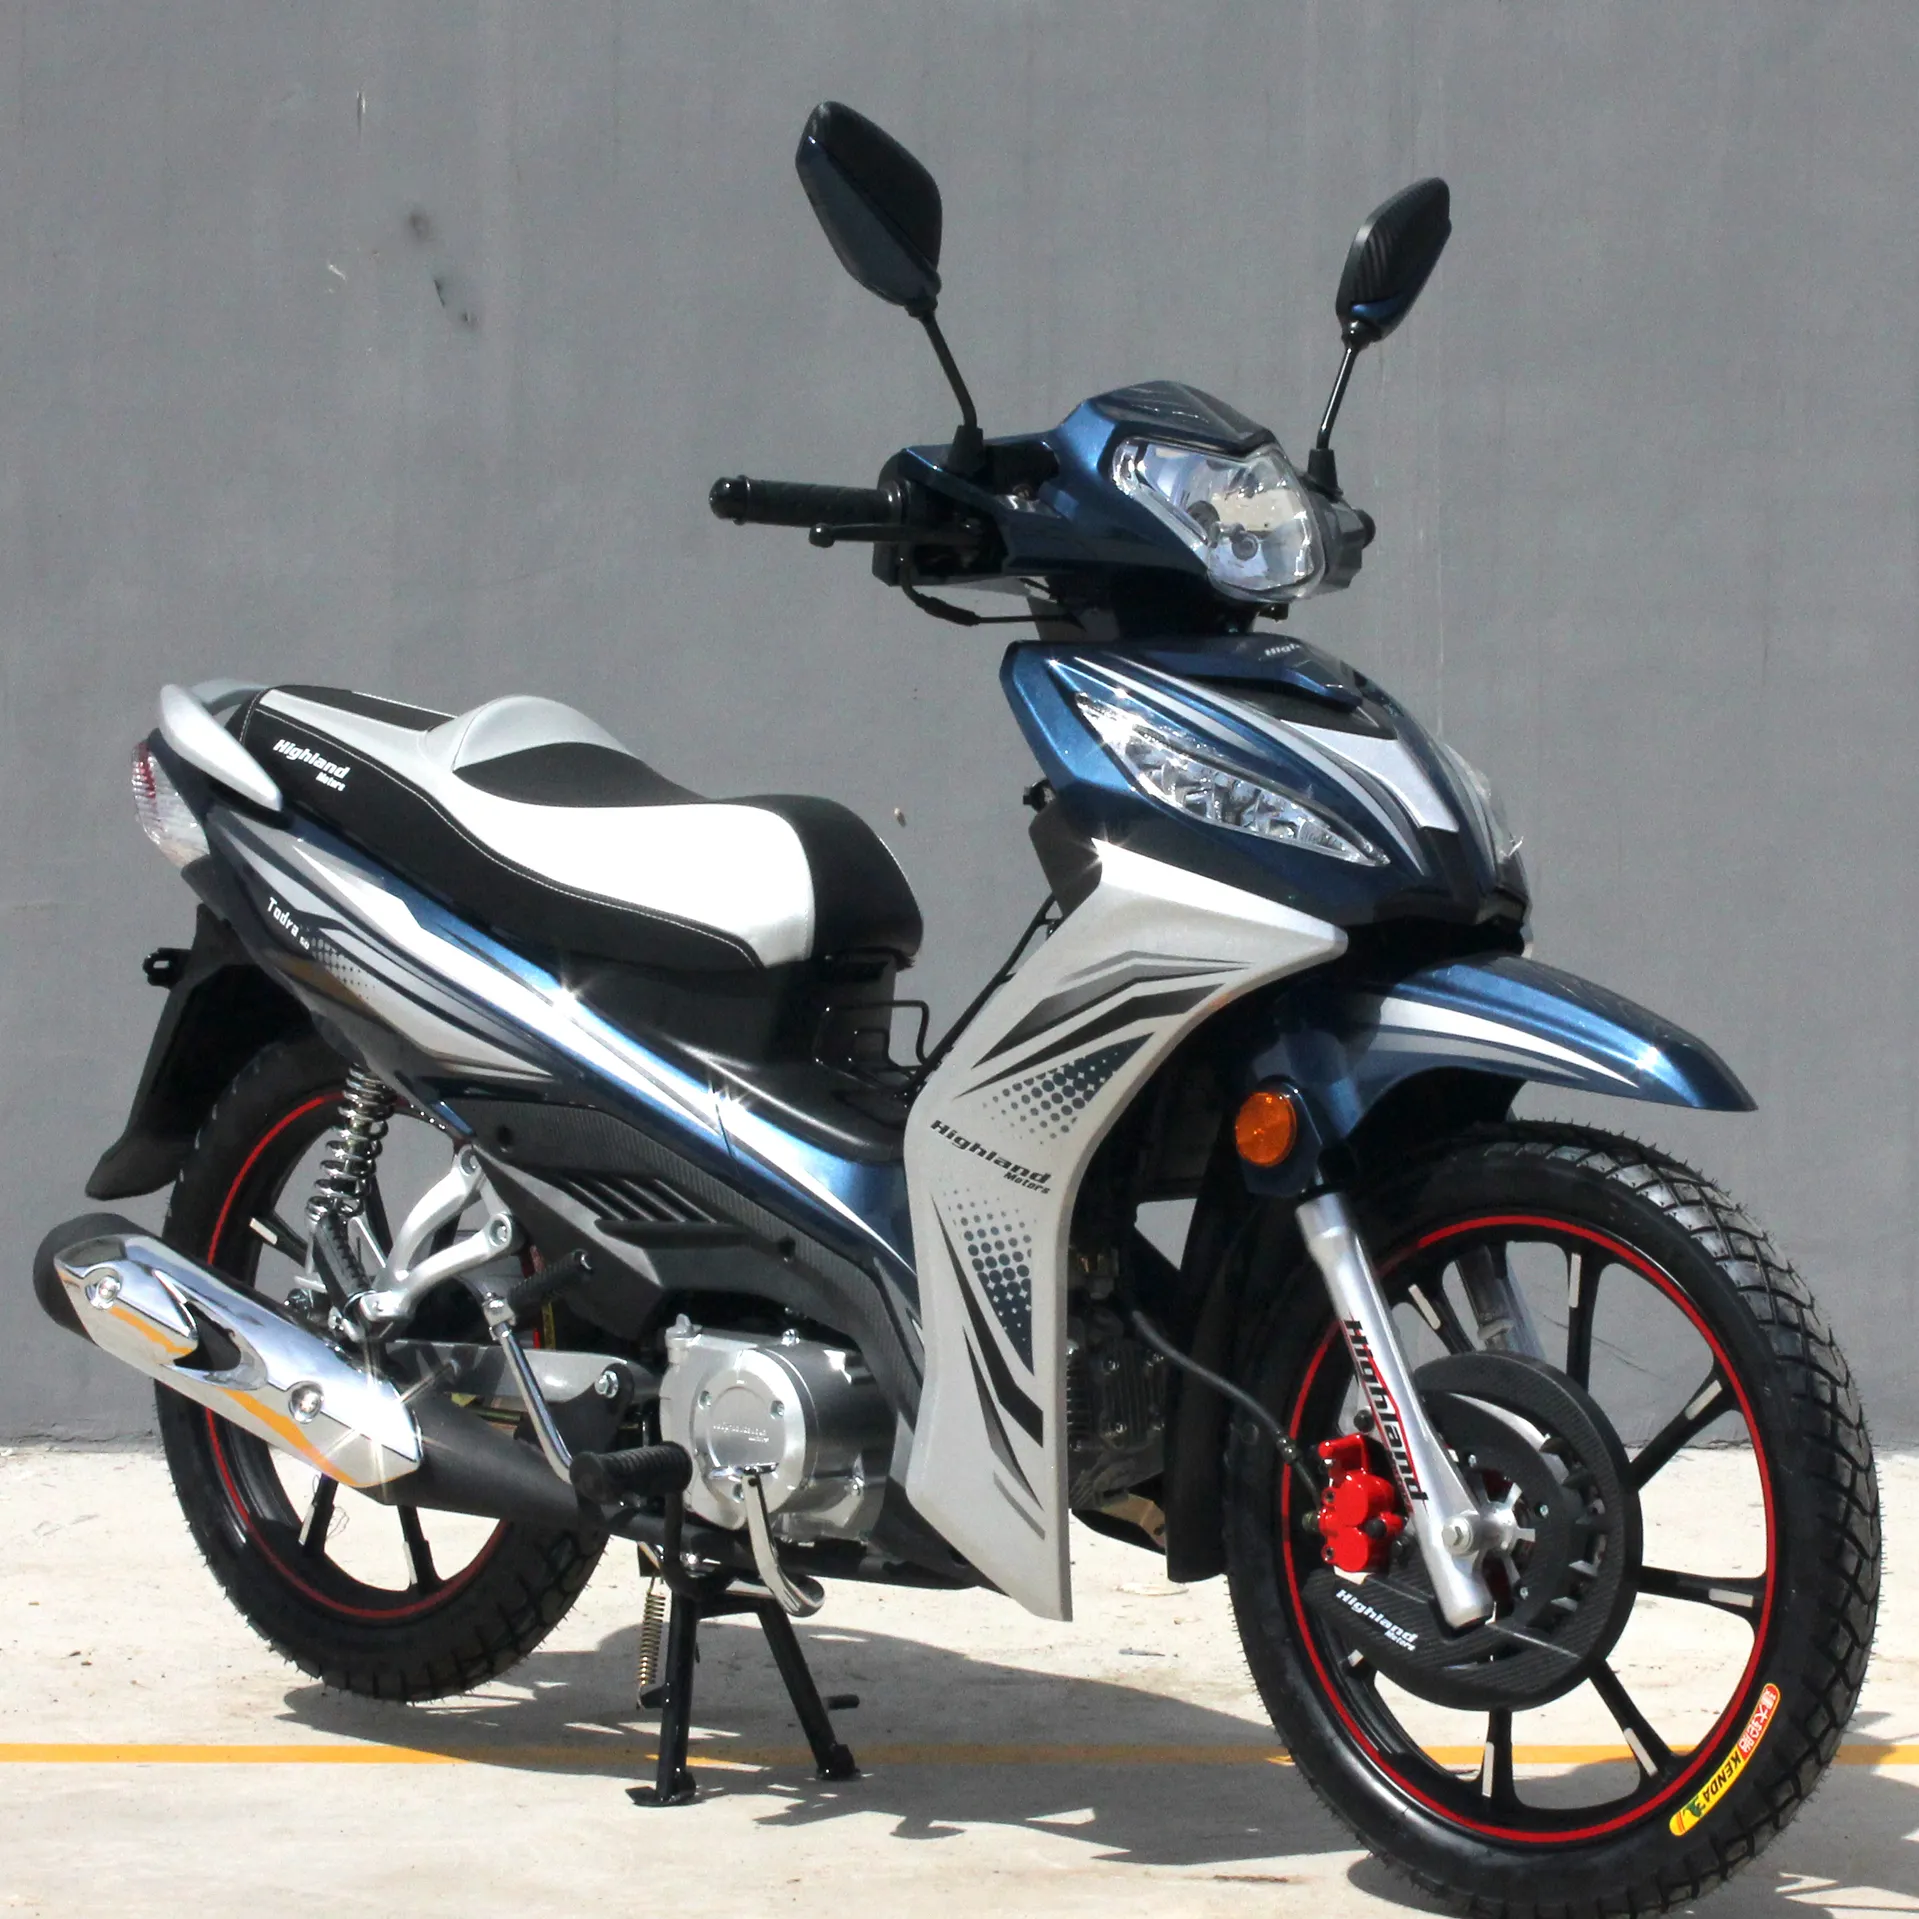 Мотоцикл 125cc cub 50Q-8, синий цвет, новый дизайн, производитель бензина, рынок Африки, Южная Америка